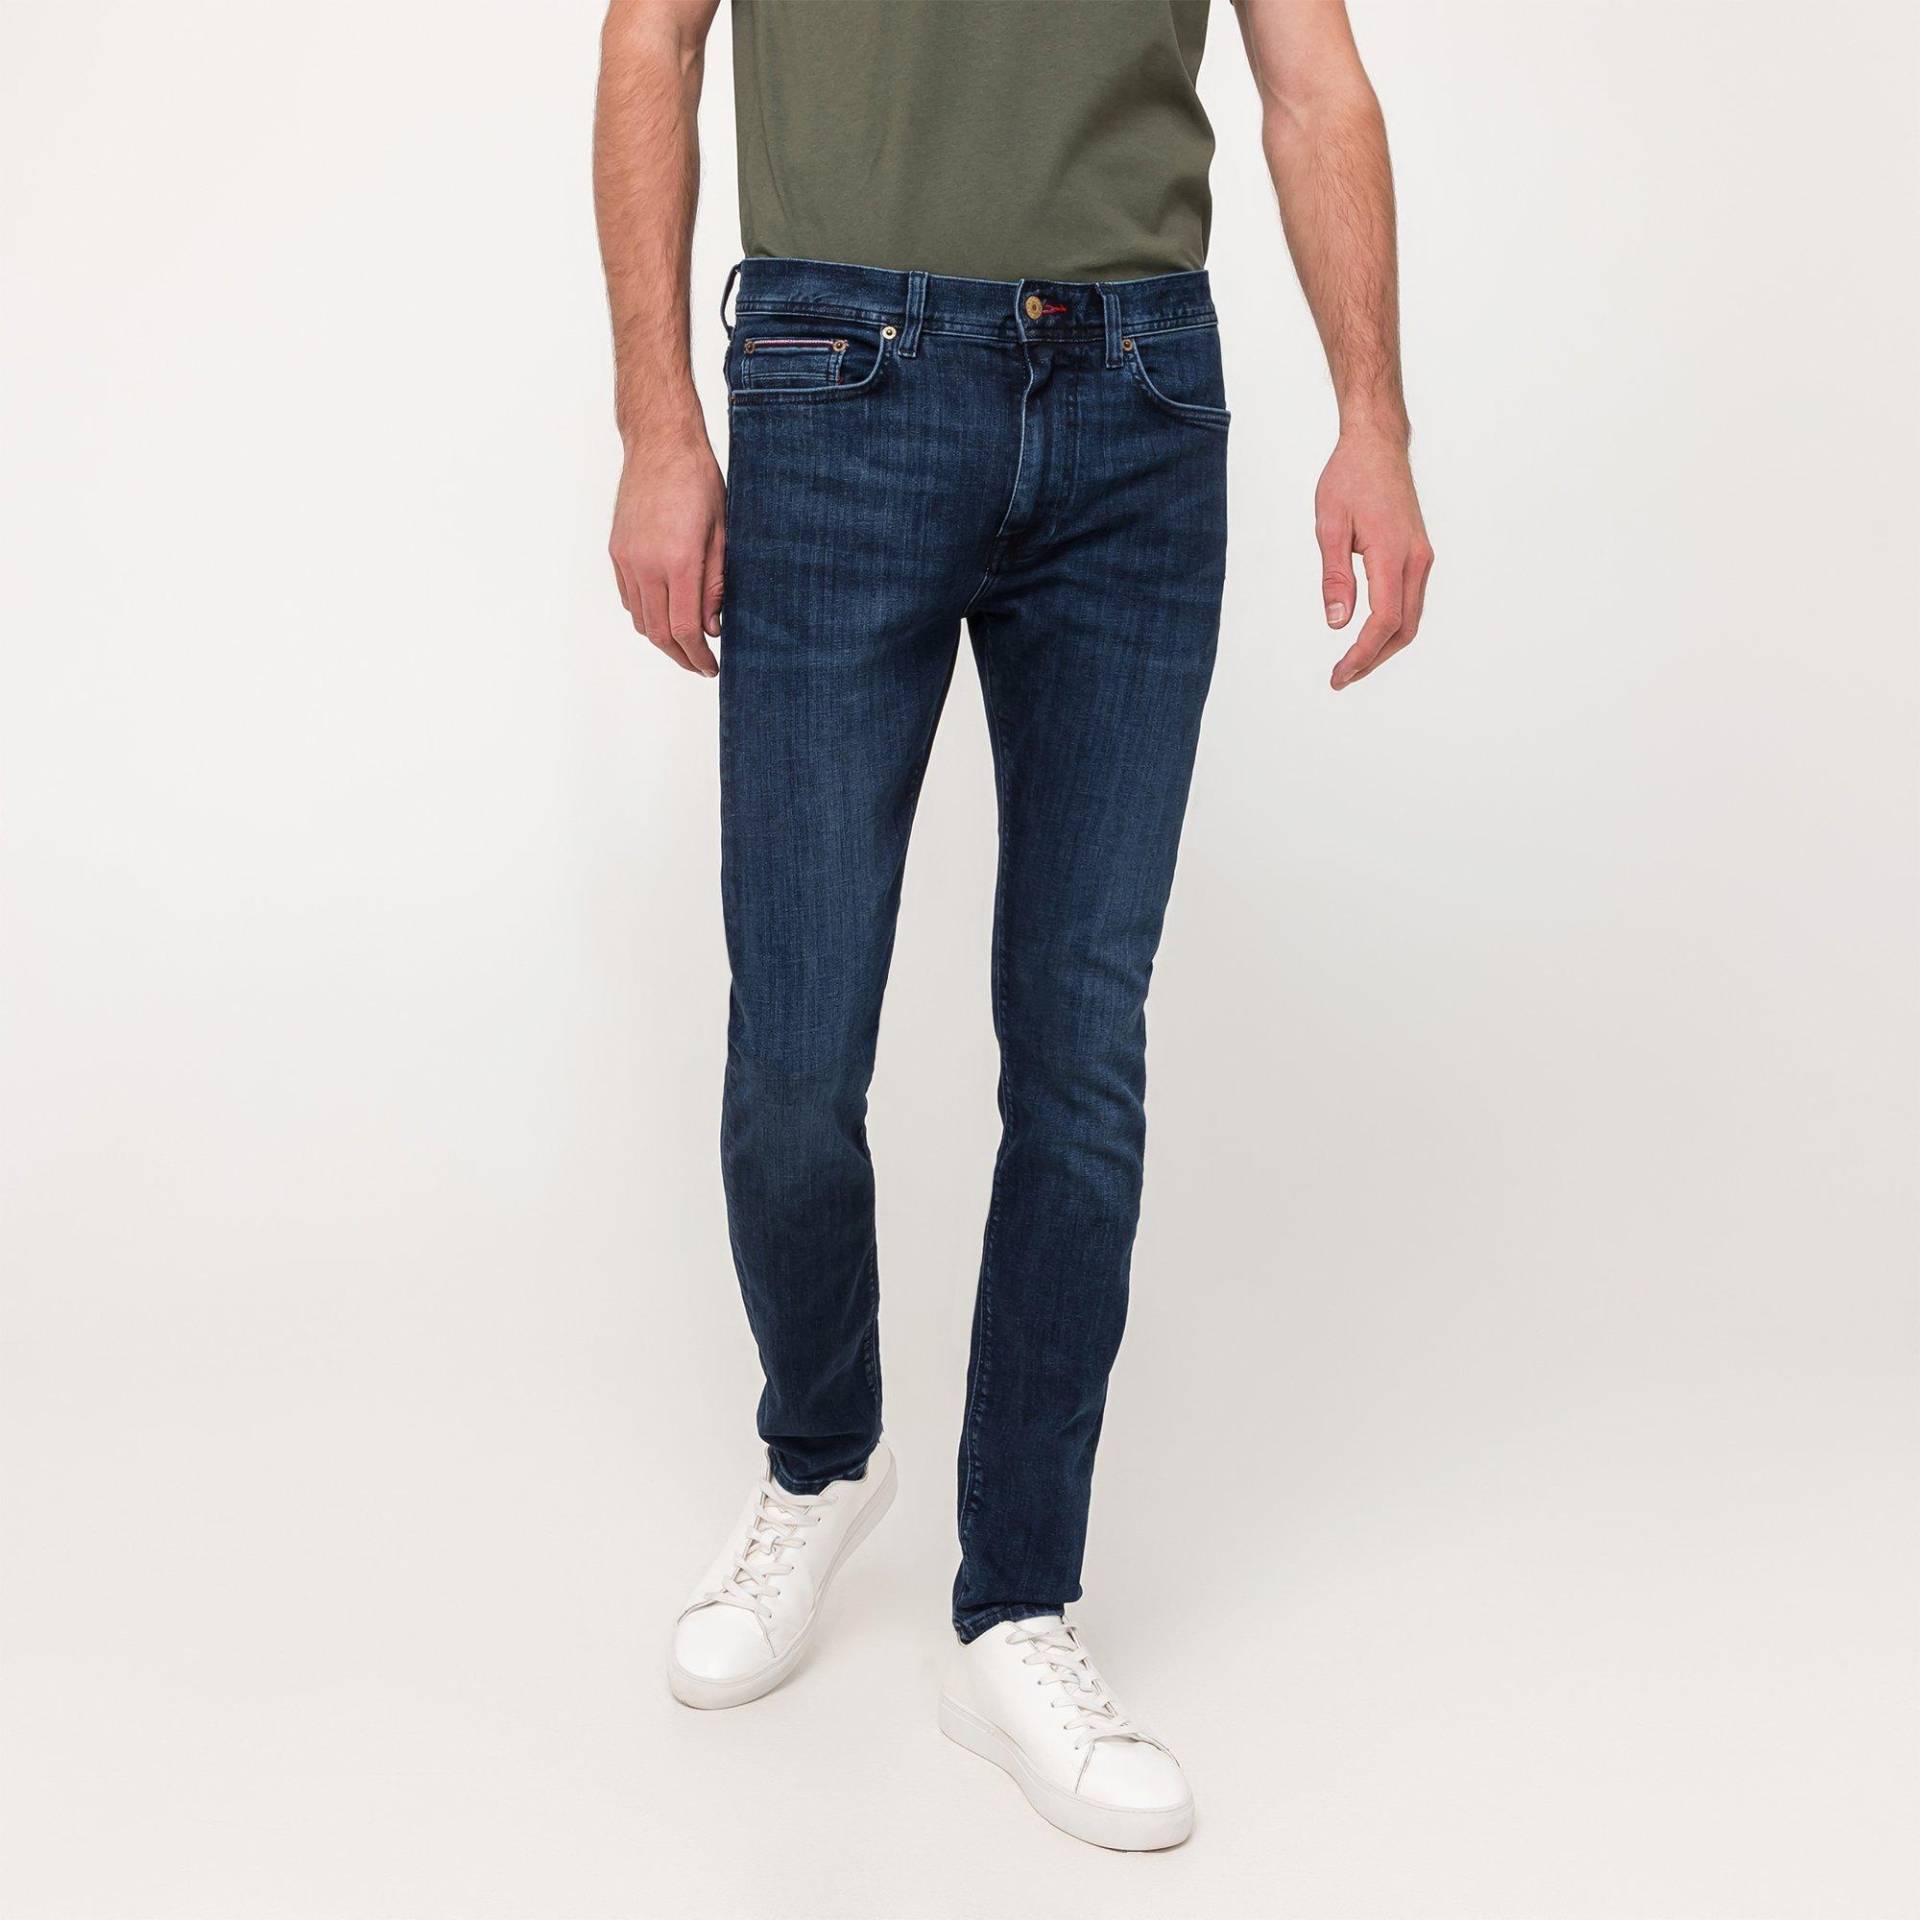 Jeans, Slim Fit Herren Indigo L32/W32 von TOMMY HILFIGER